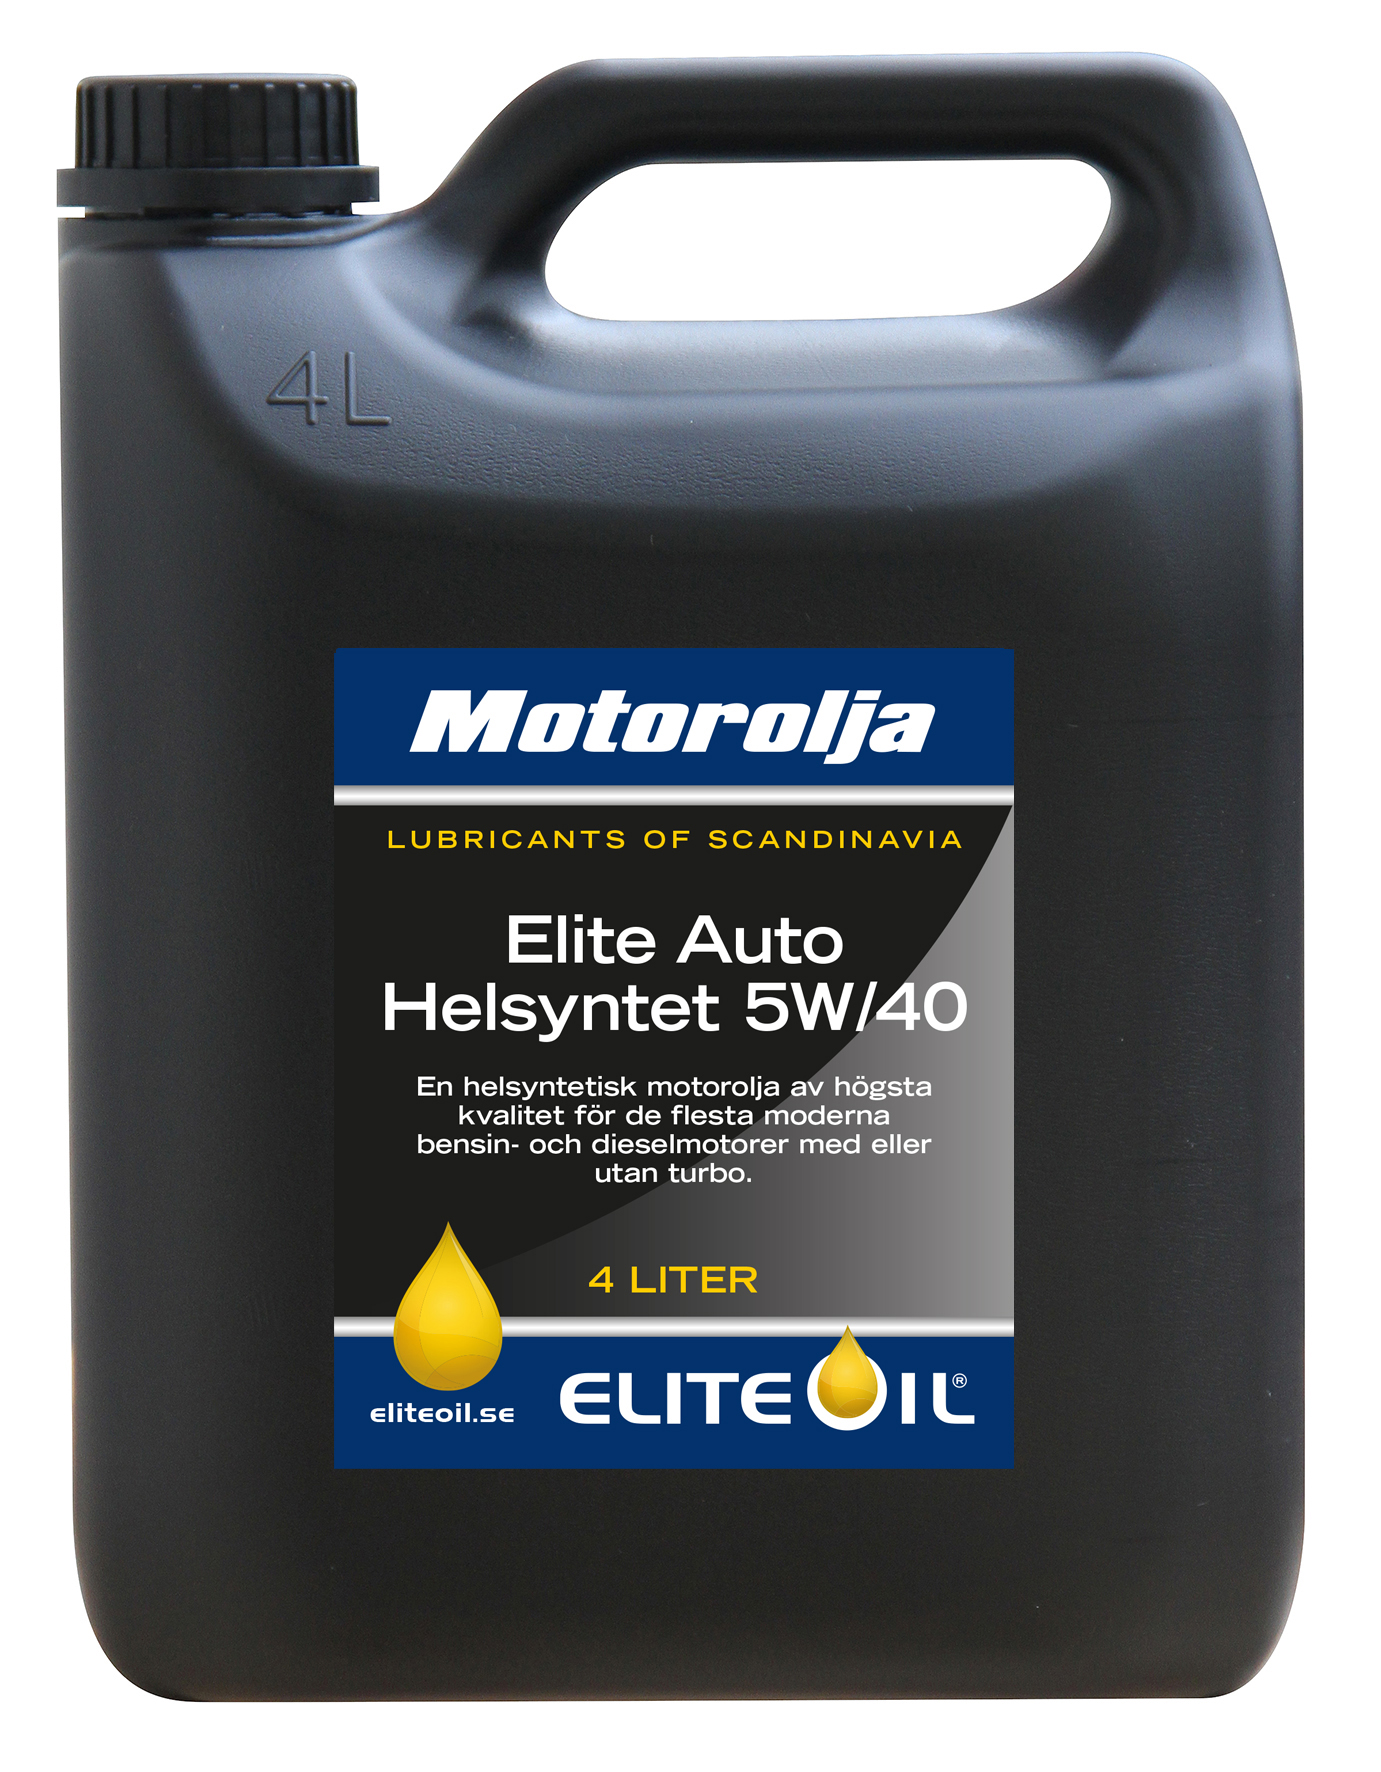 Elite Auto Helsyntet, 5W/40, 4 liter dunk-image